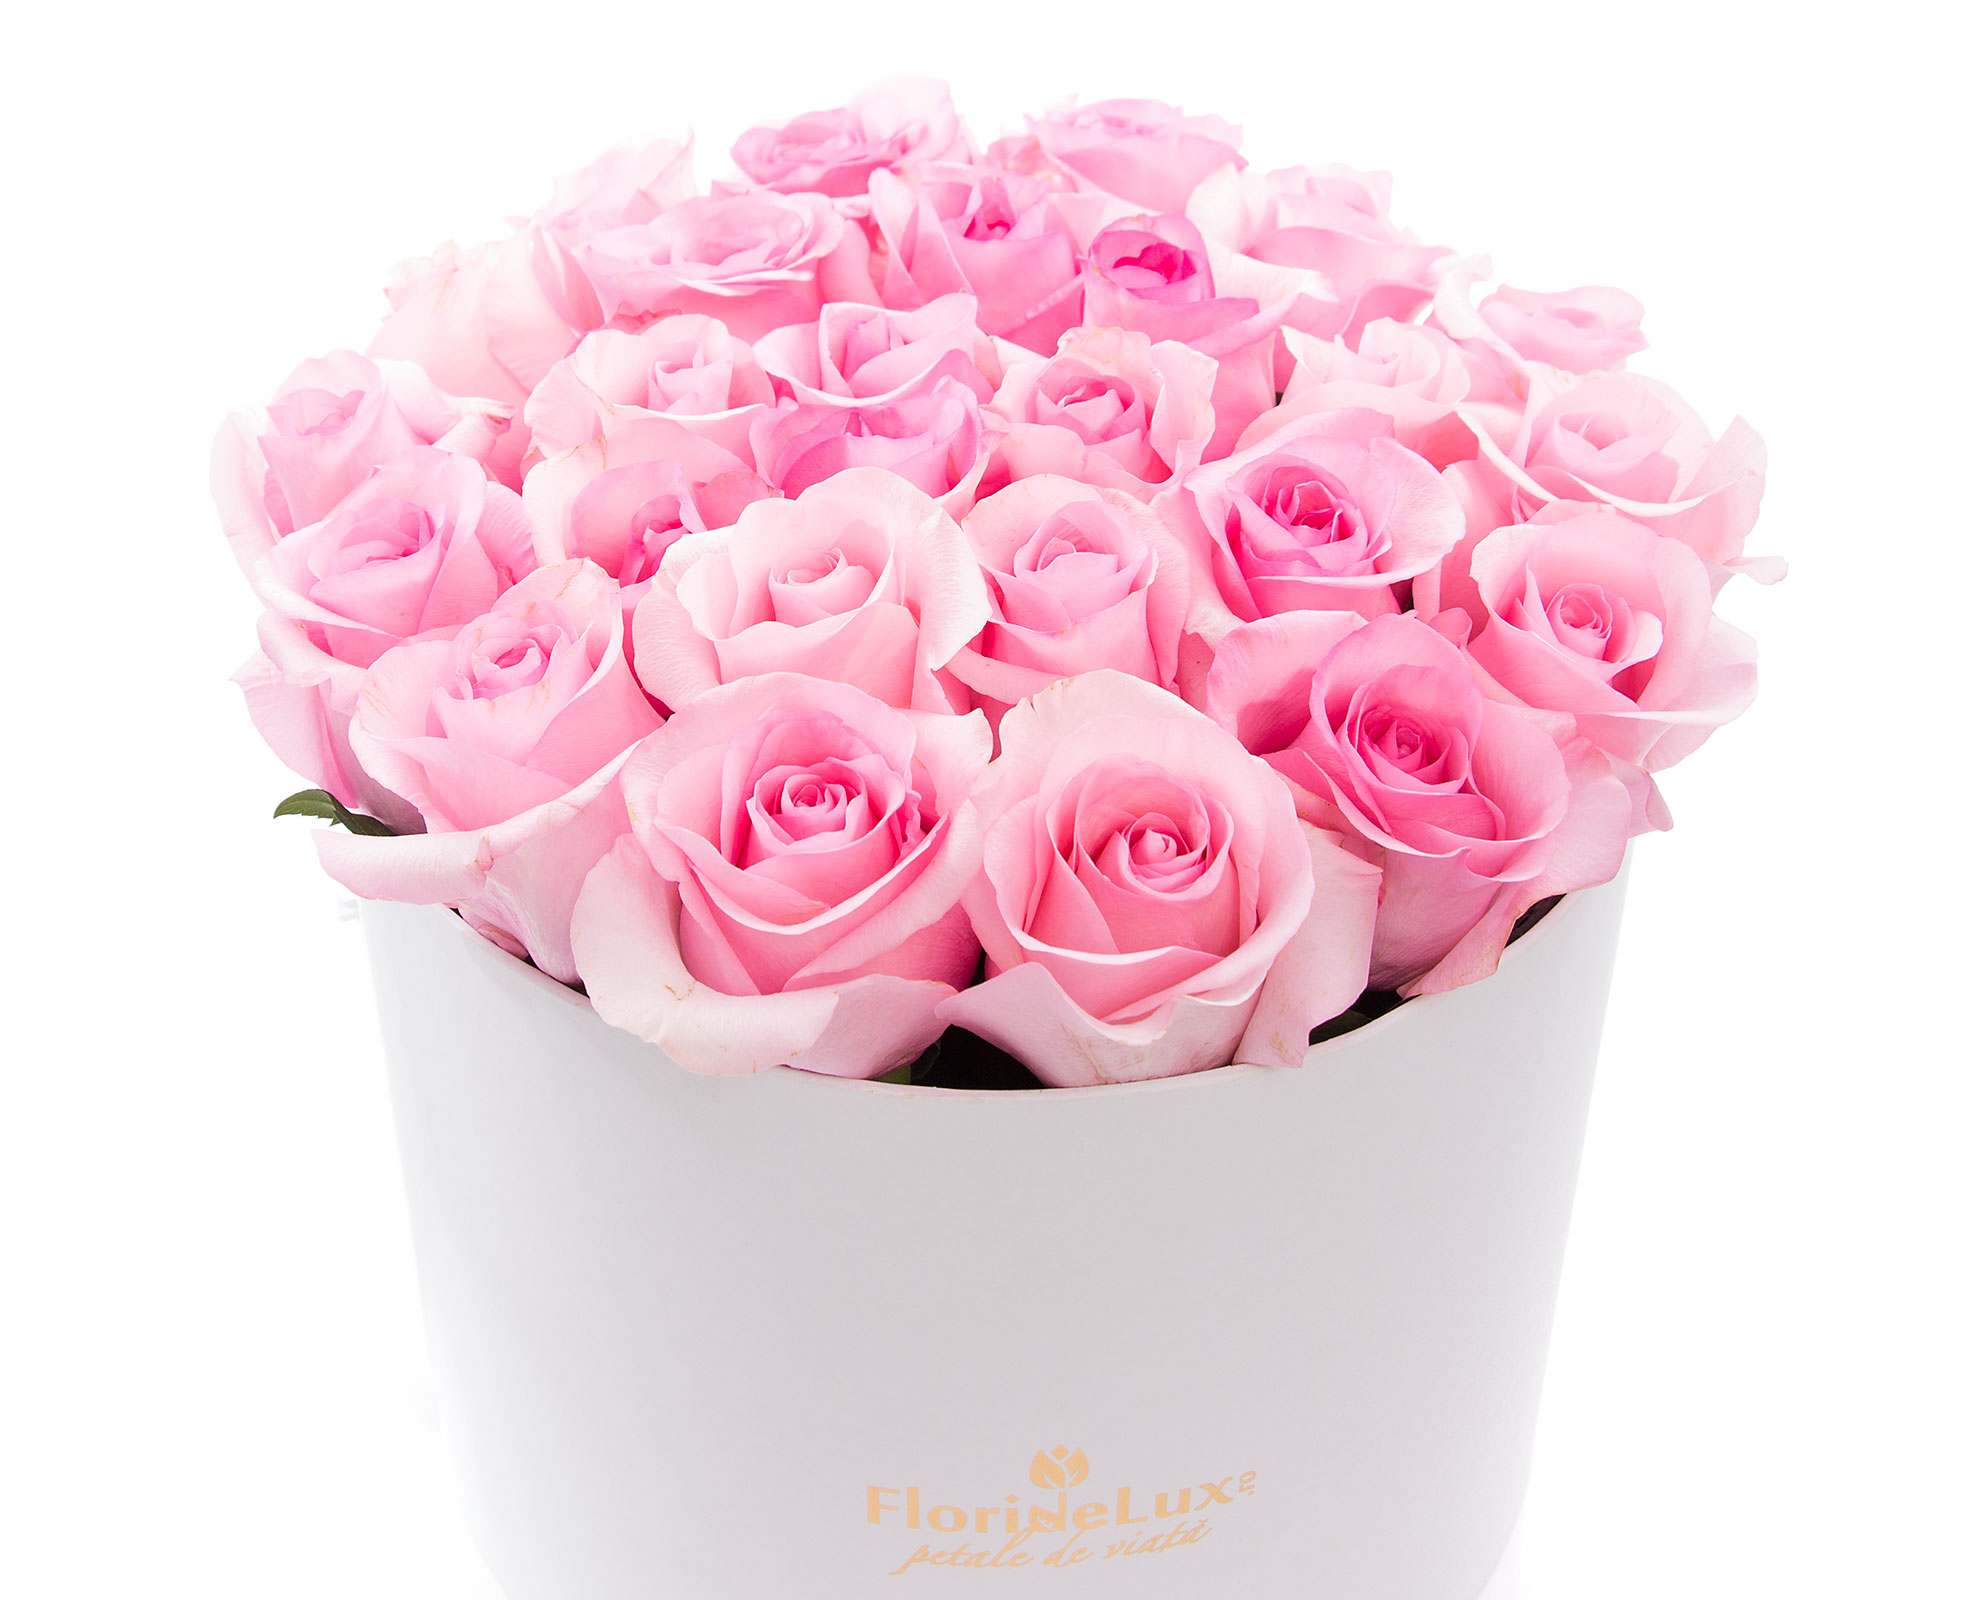 Cutie delicata trandafiri roz pal si Corton Charlemagne